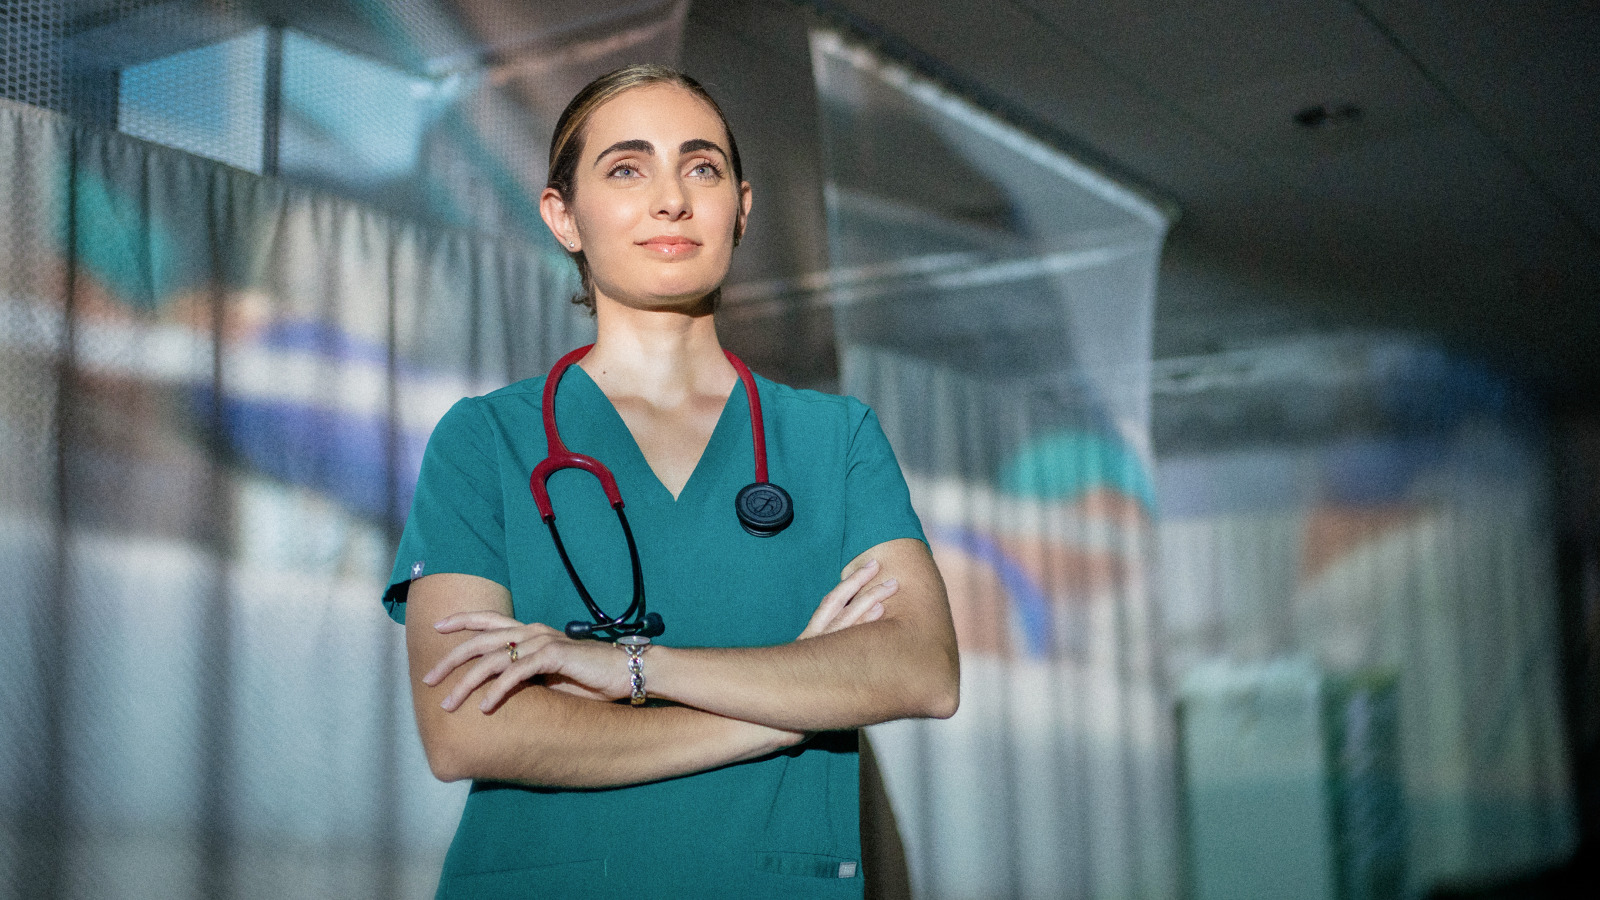 Bachelor of Science in Nursing – Miami